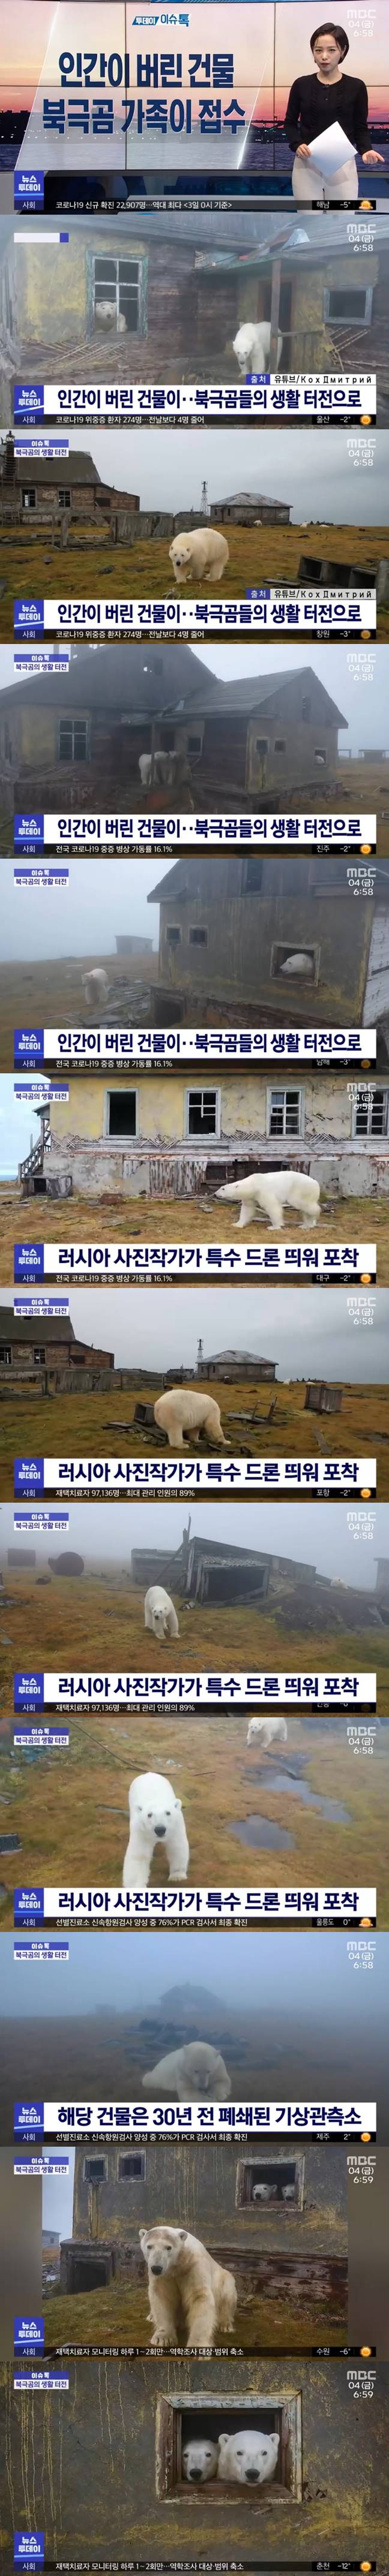 인간이 버린 건물에 입주한 북극곰 가족.jpg